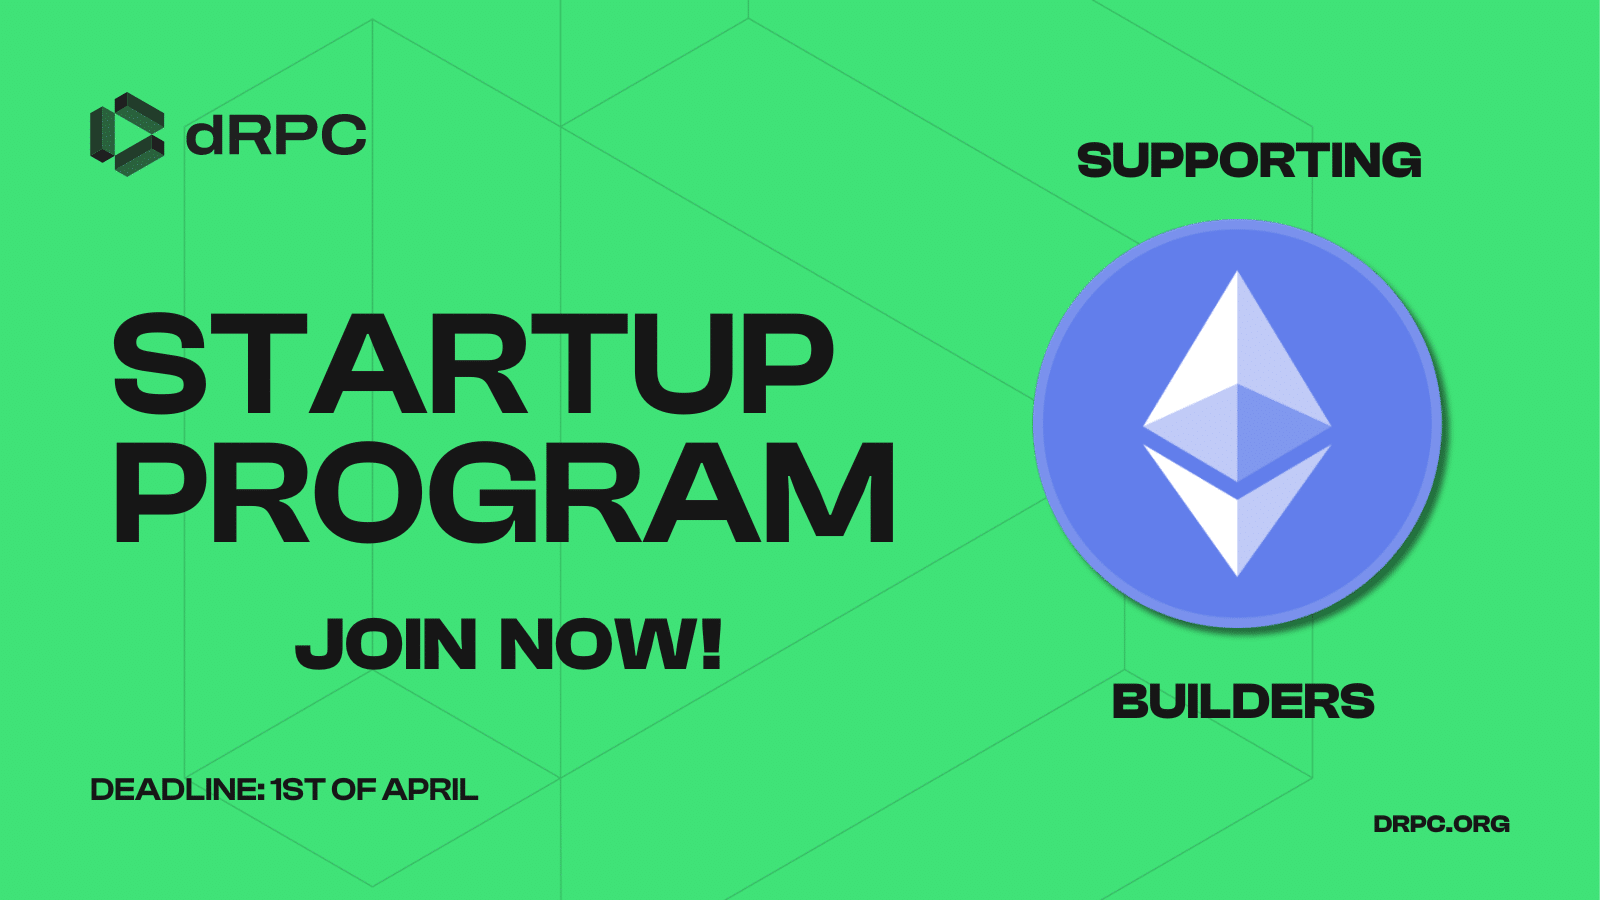 drpc-startup-program-web3-api-rpc-ethereum